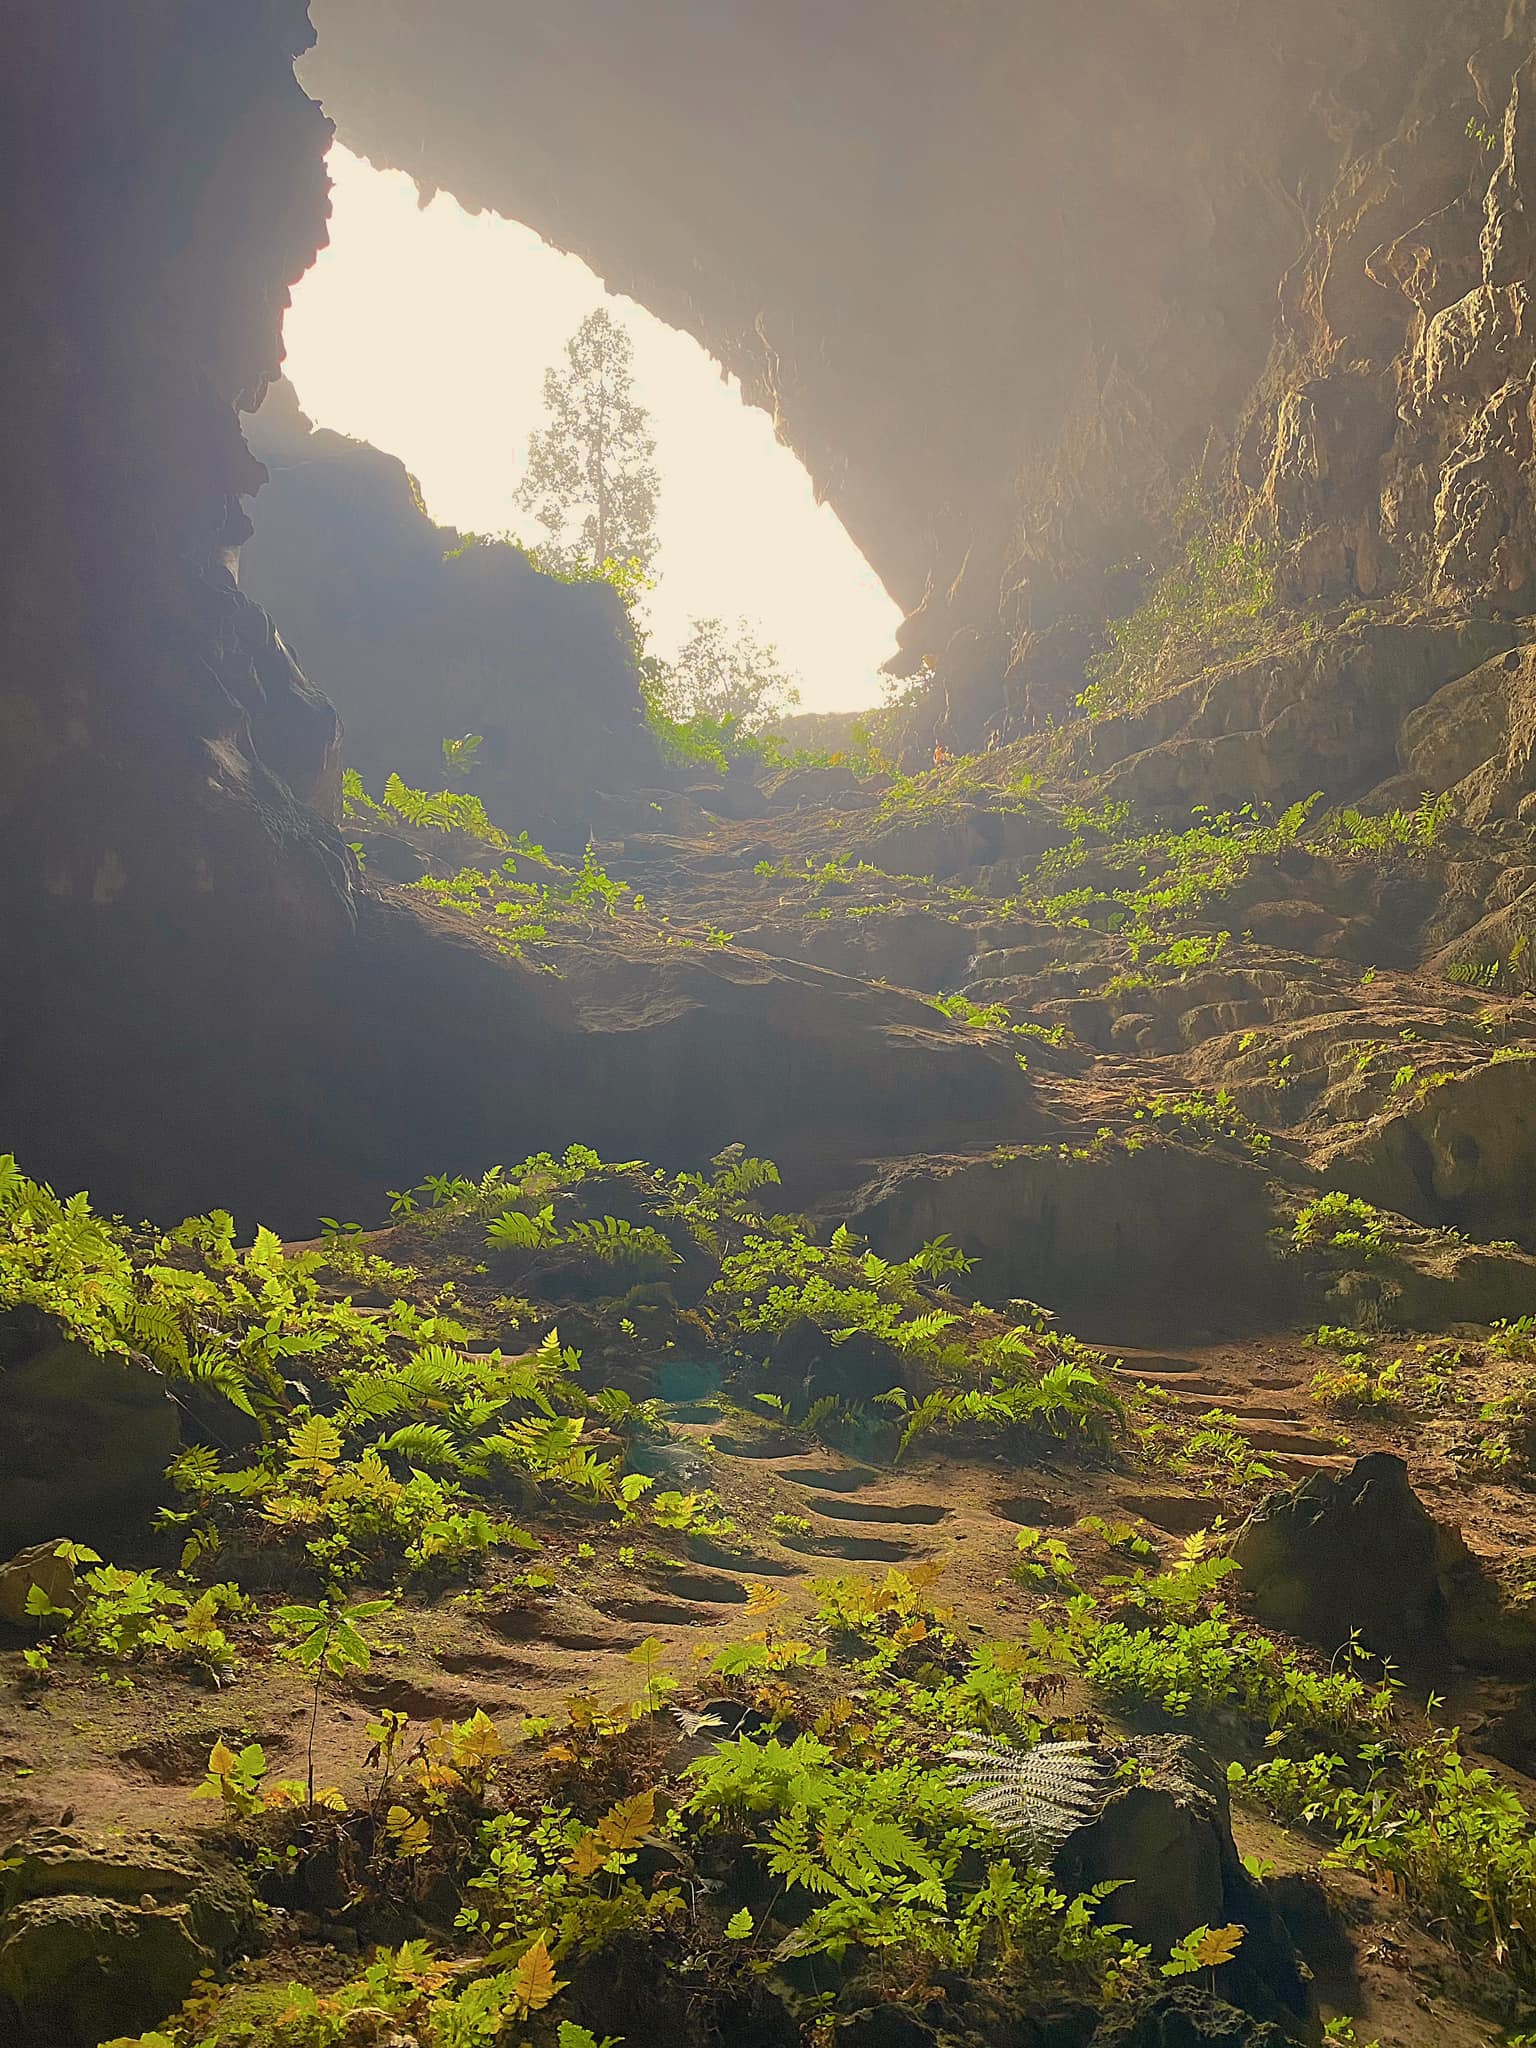 Phát hiện hang động hoang sơ với những khối núi đá vôi hàng trăm triệu tuổi, cách Hà Nội chỉ hơn 200km - Ảnh 11.